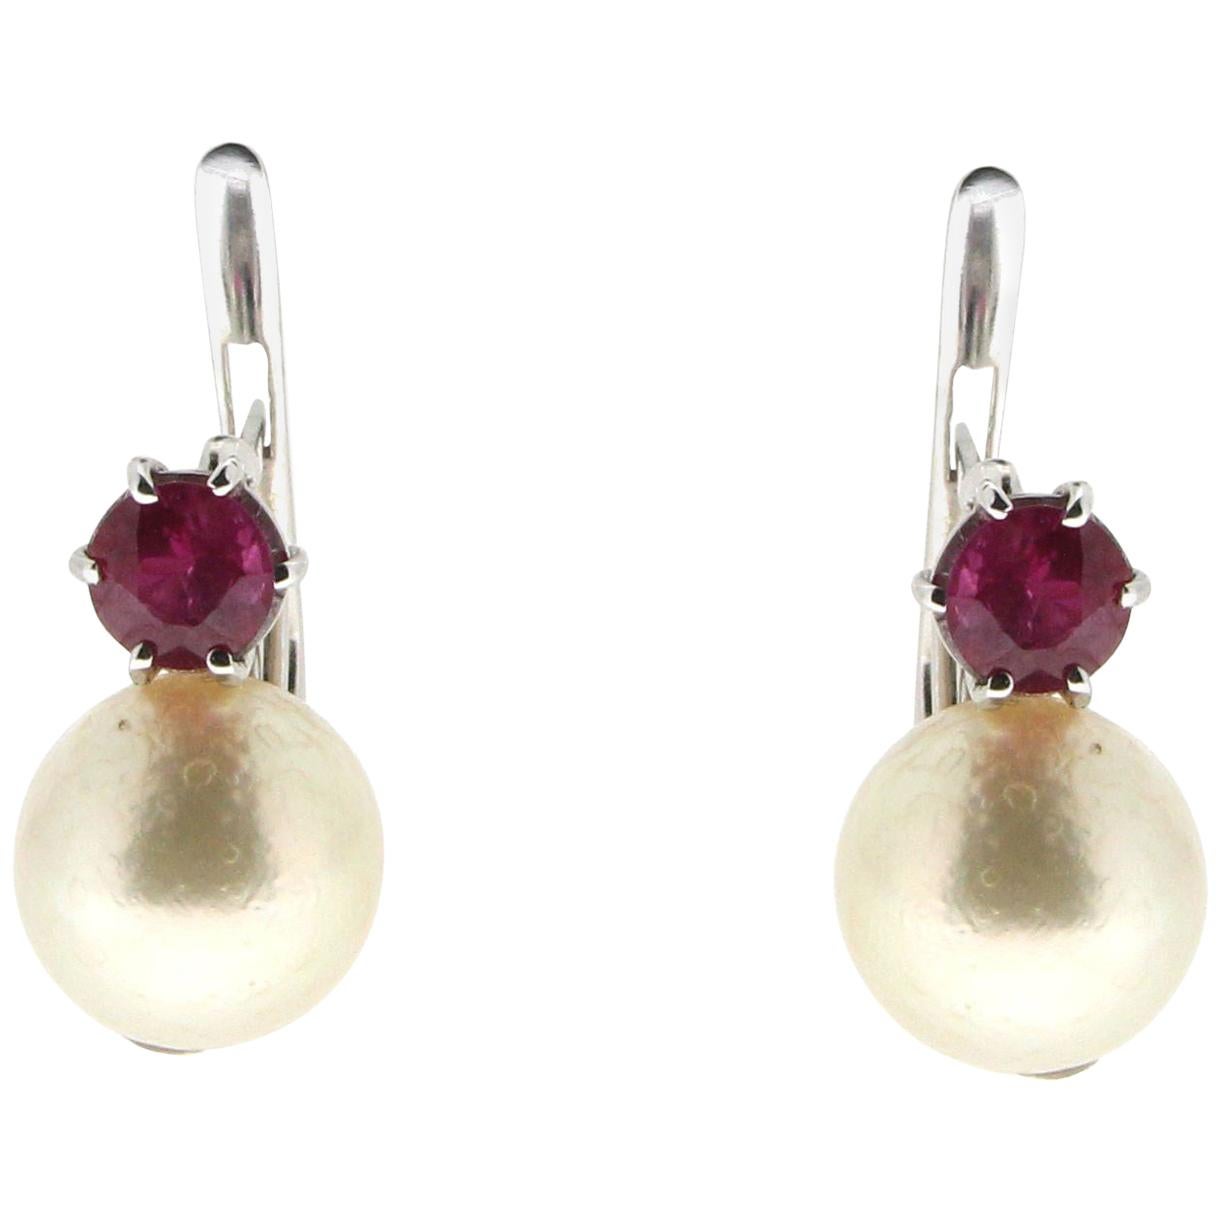 Clips d'oreilles en or blanc 18 carats avec perles du Japon et rubis, fabrication artisanale